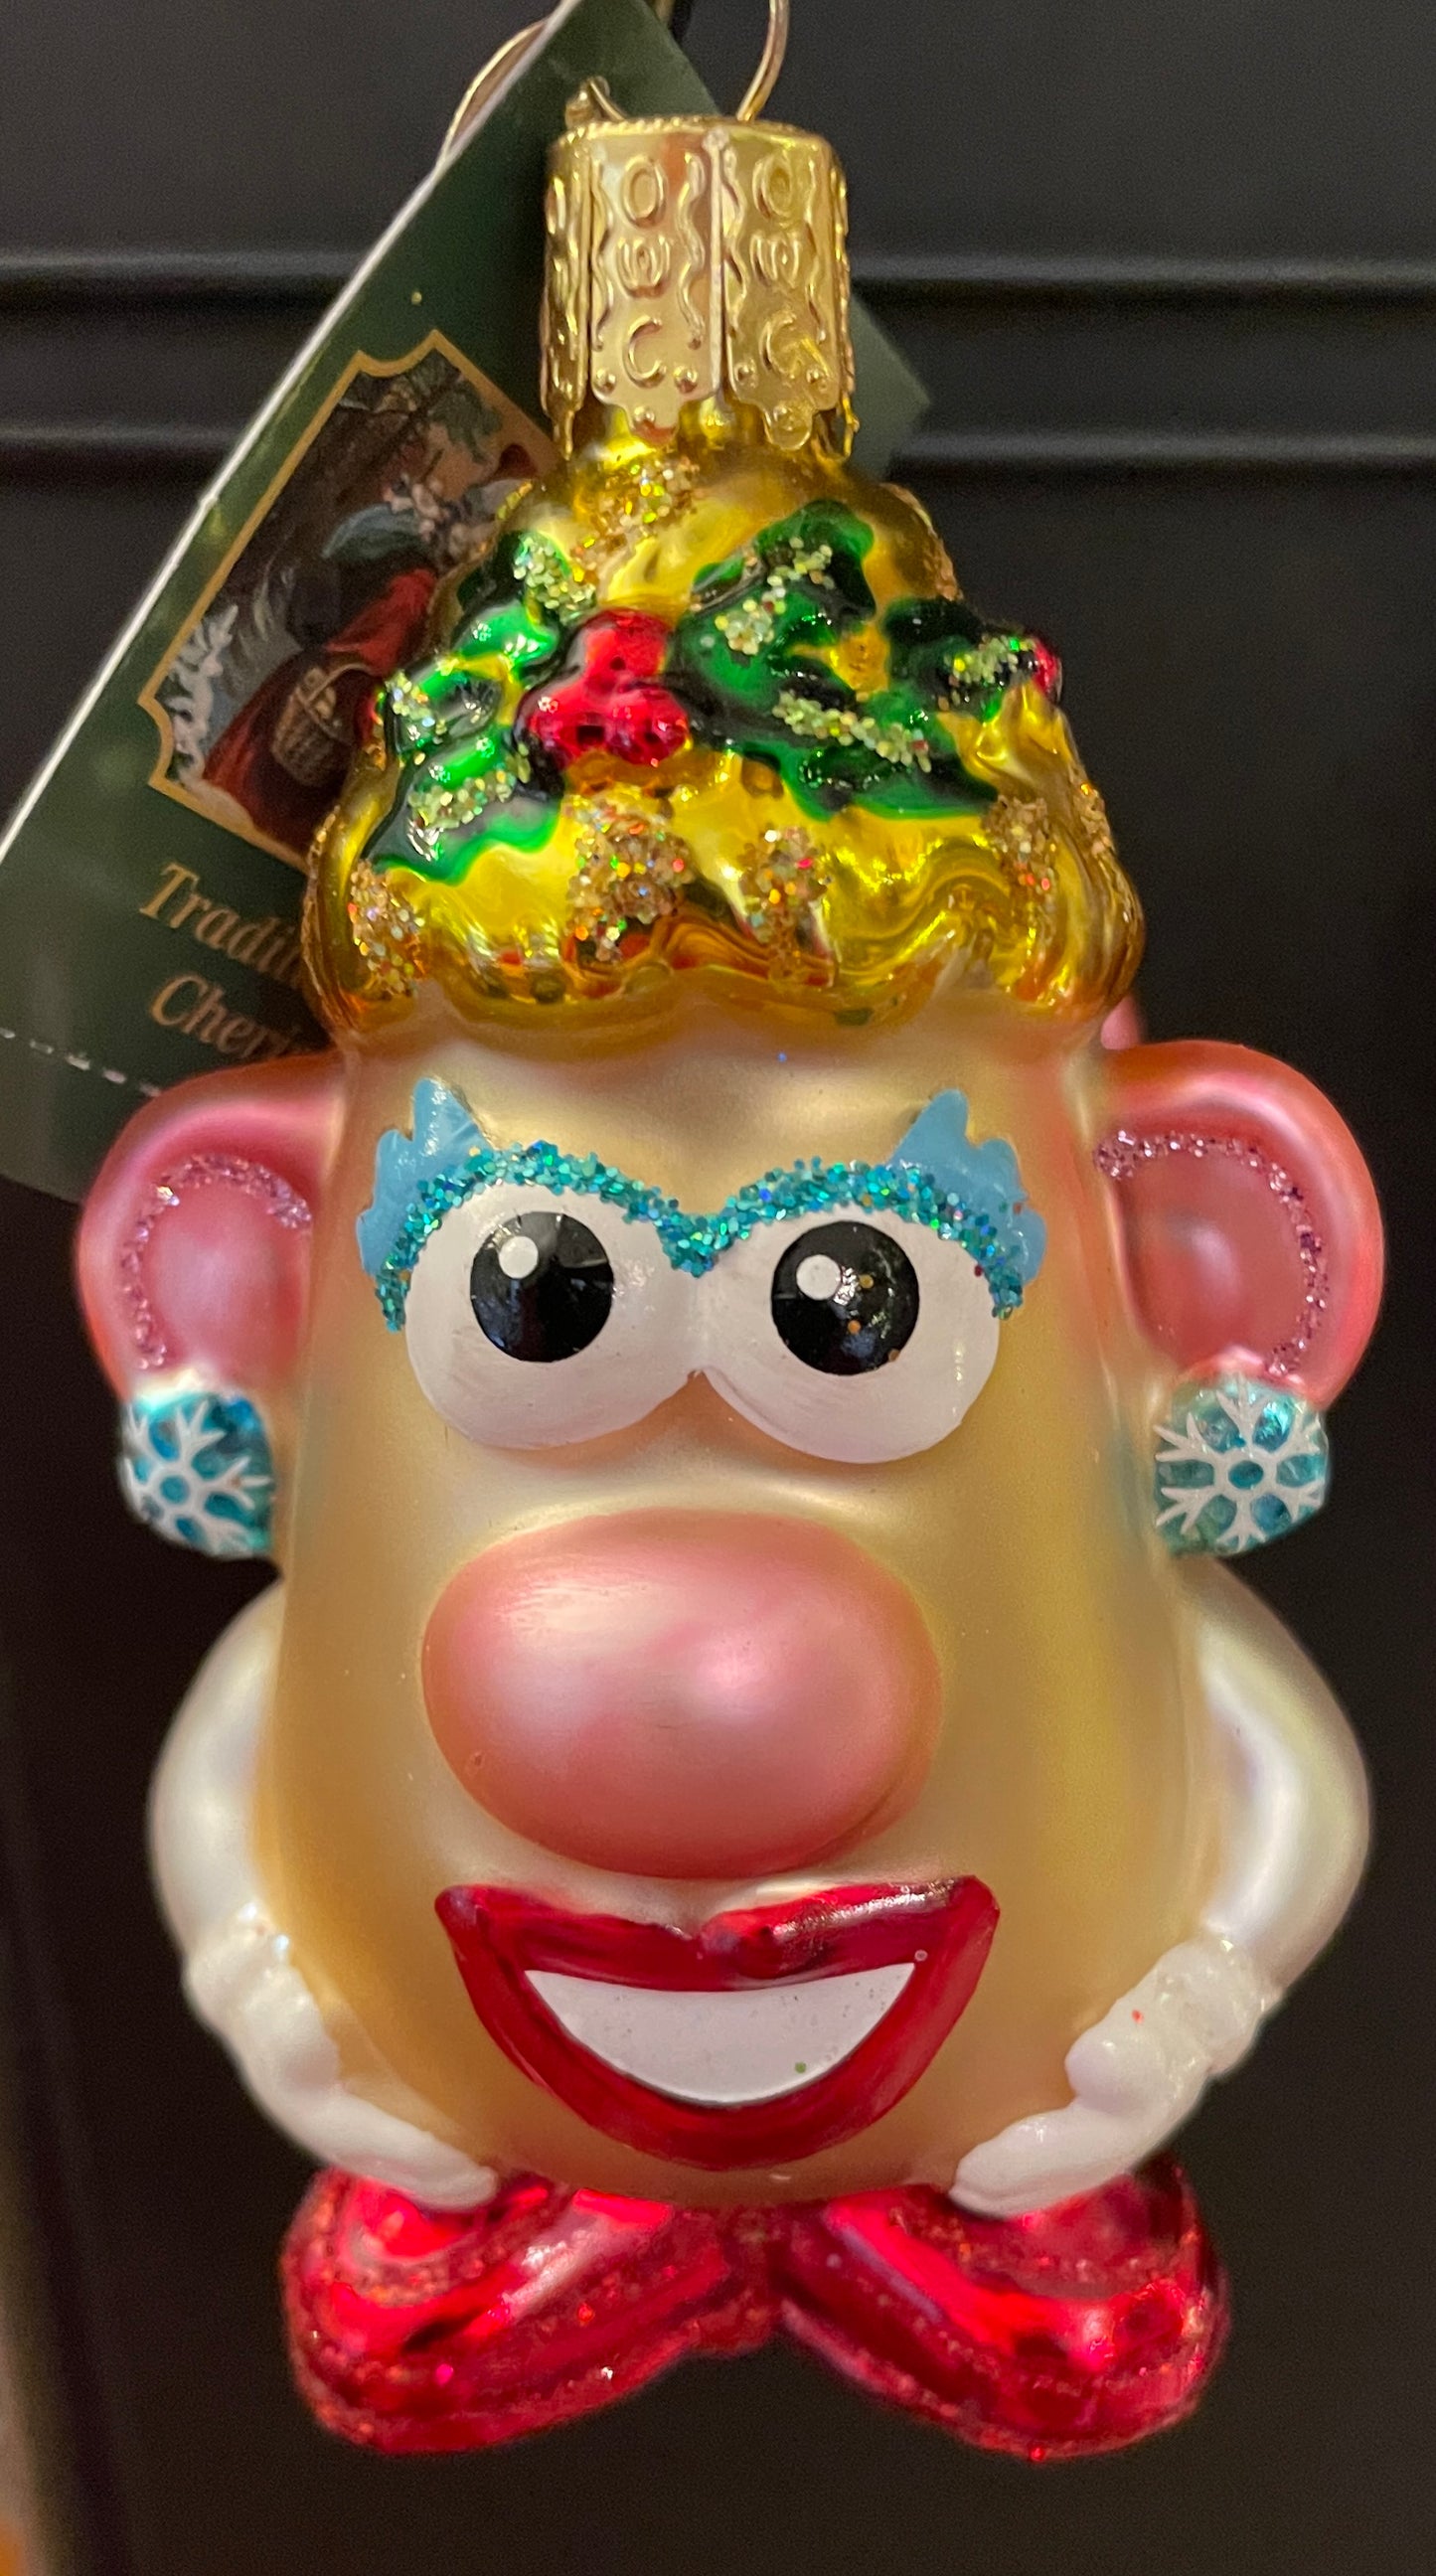 Mr. And Mrs. Potato Head Ornament